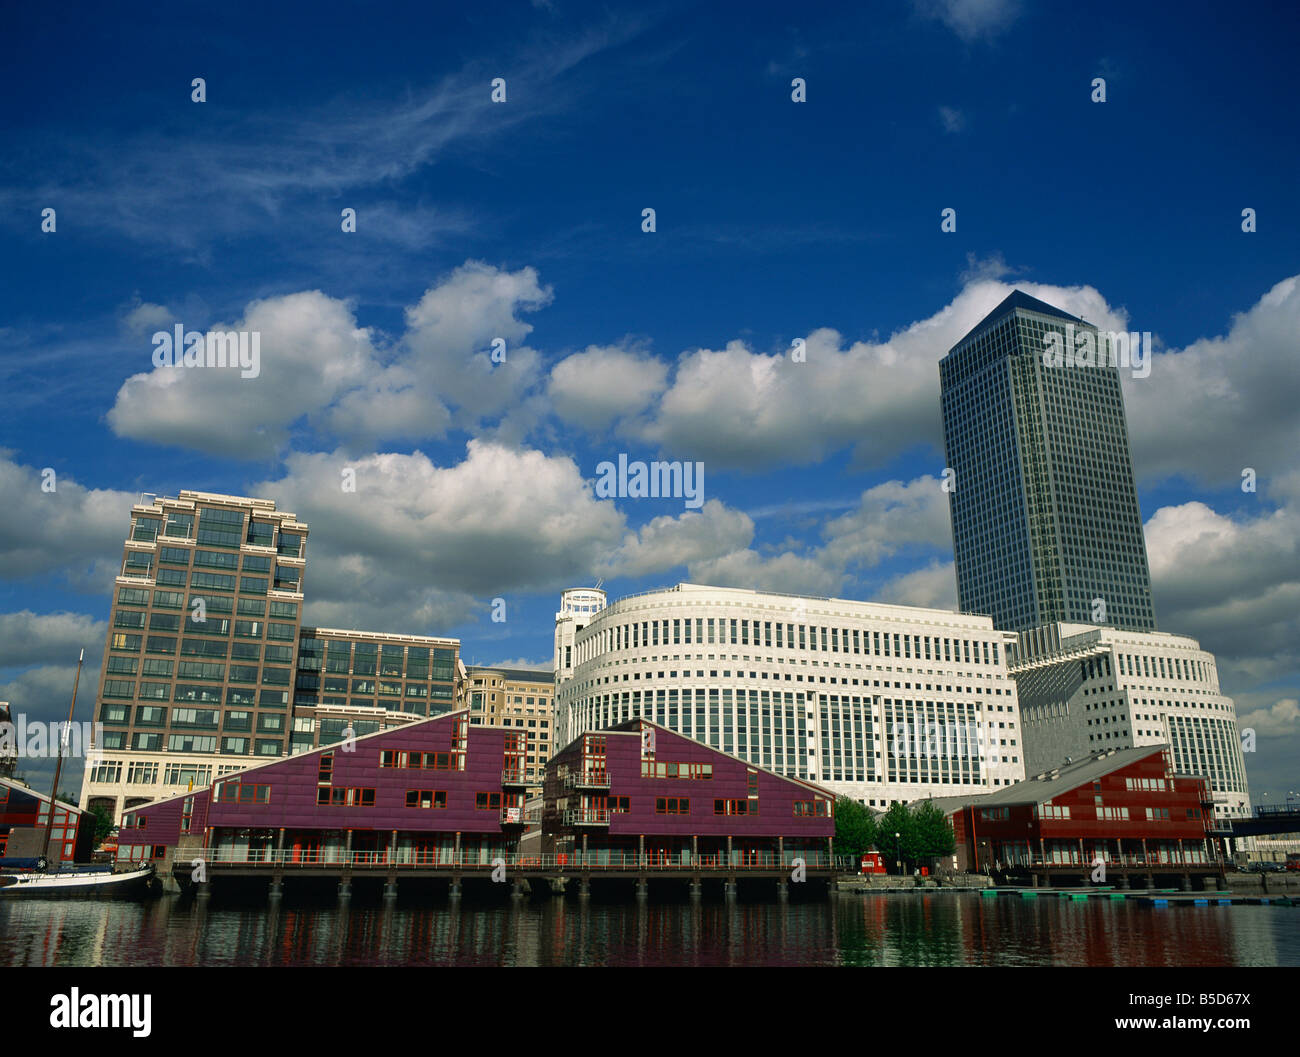 Canary Wharf et de l'architecture moderne Docklands Londres Angleterre Royaume-uni J Thorne Banque D'Images